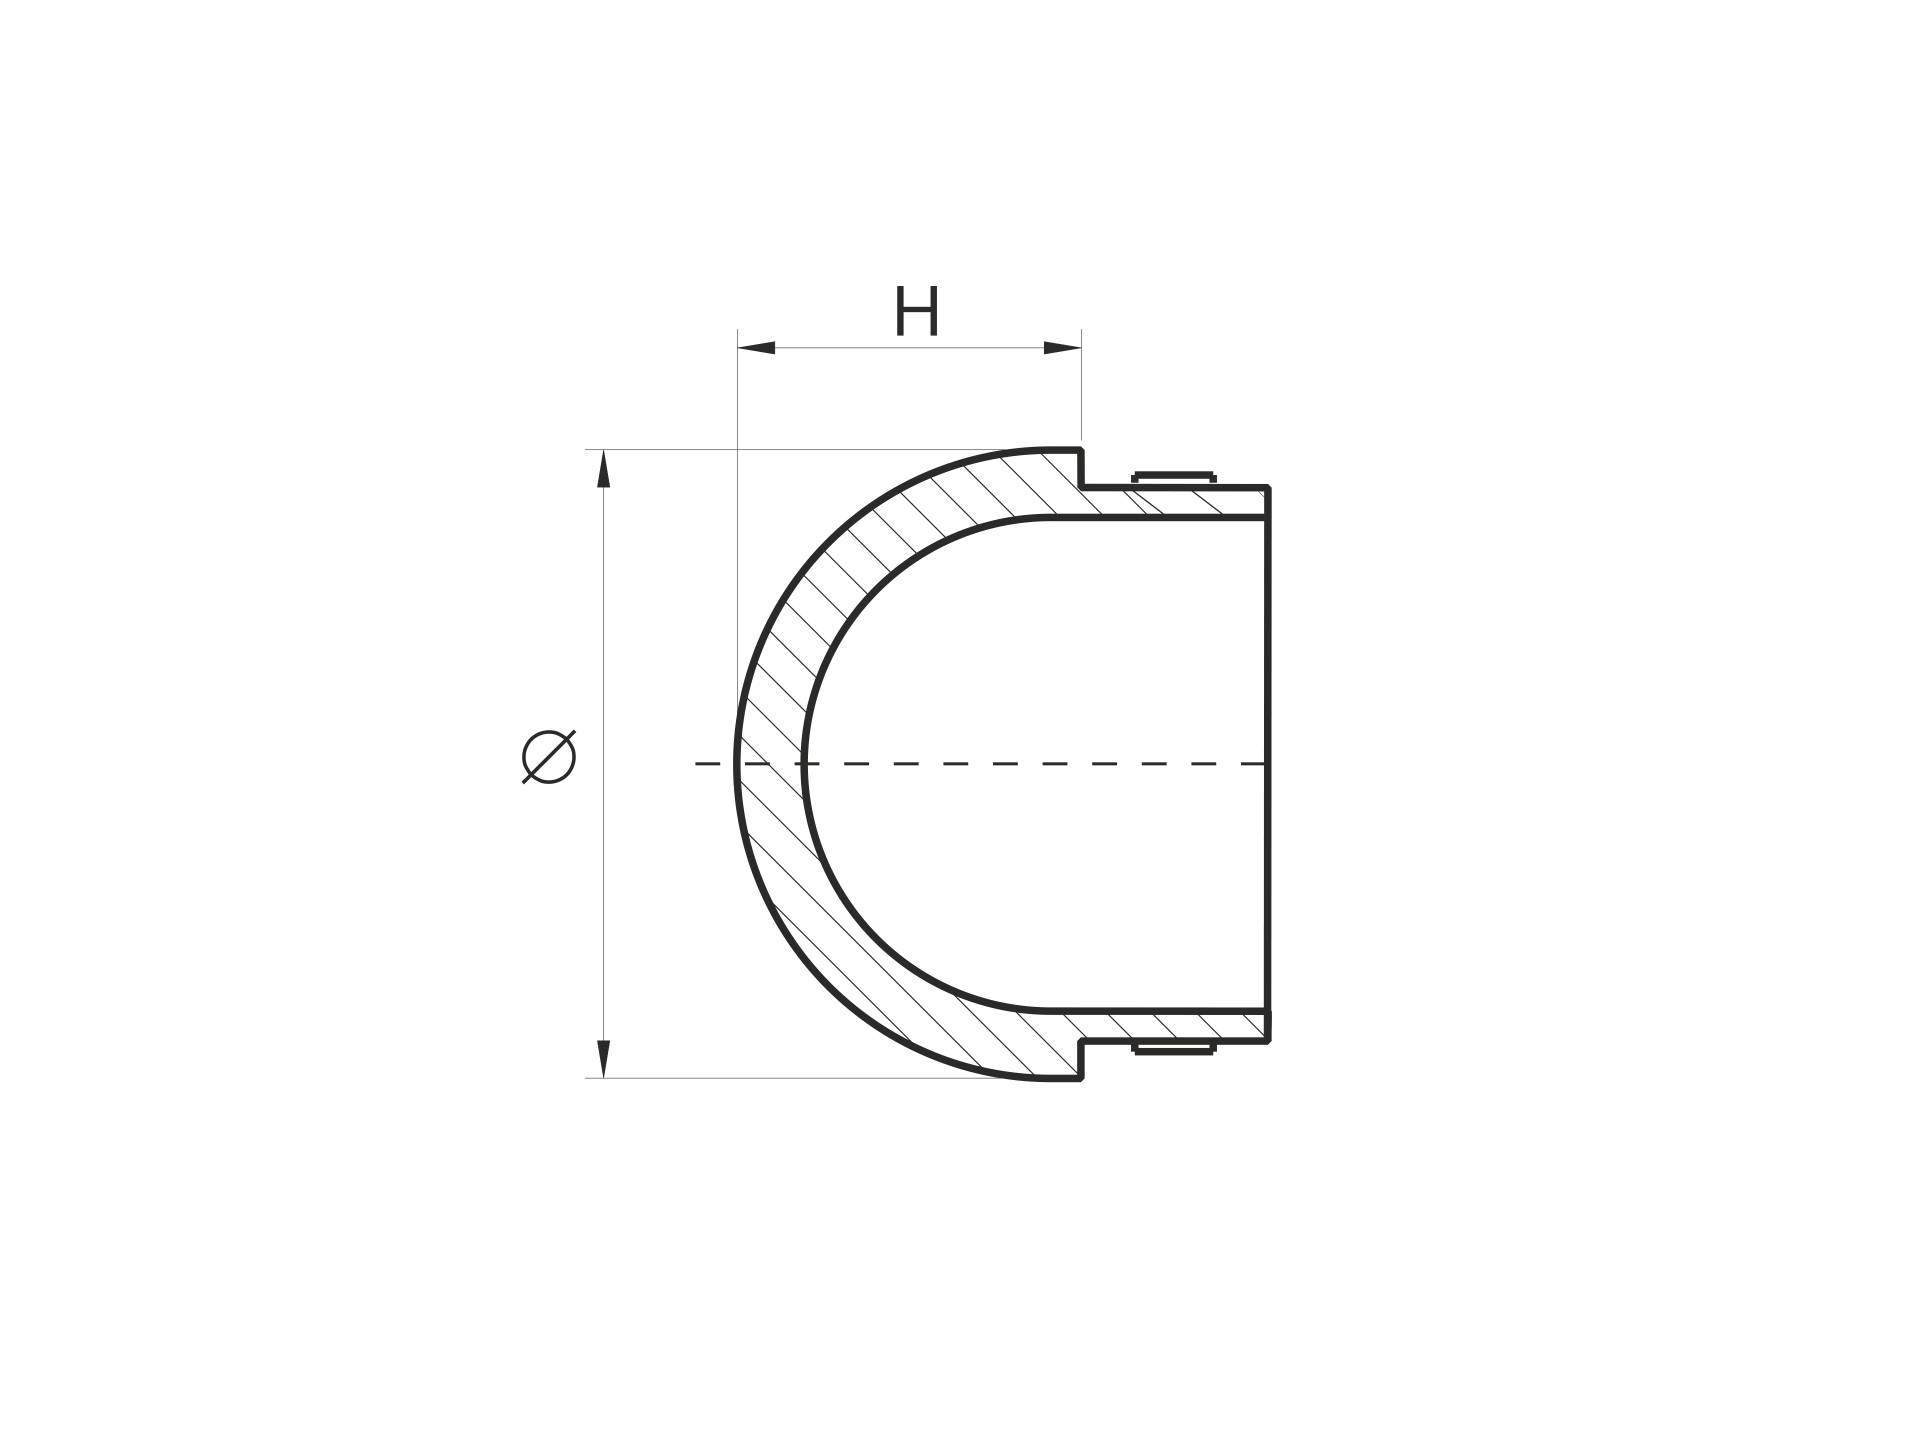 Abschlussstück/Endkappe in Form einer Halbkugel aus Edelstahl für Ø 48,3mm Rundrohre mit 2.0mm Rändelung